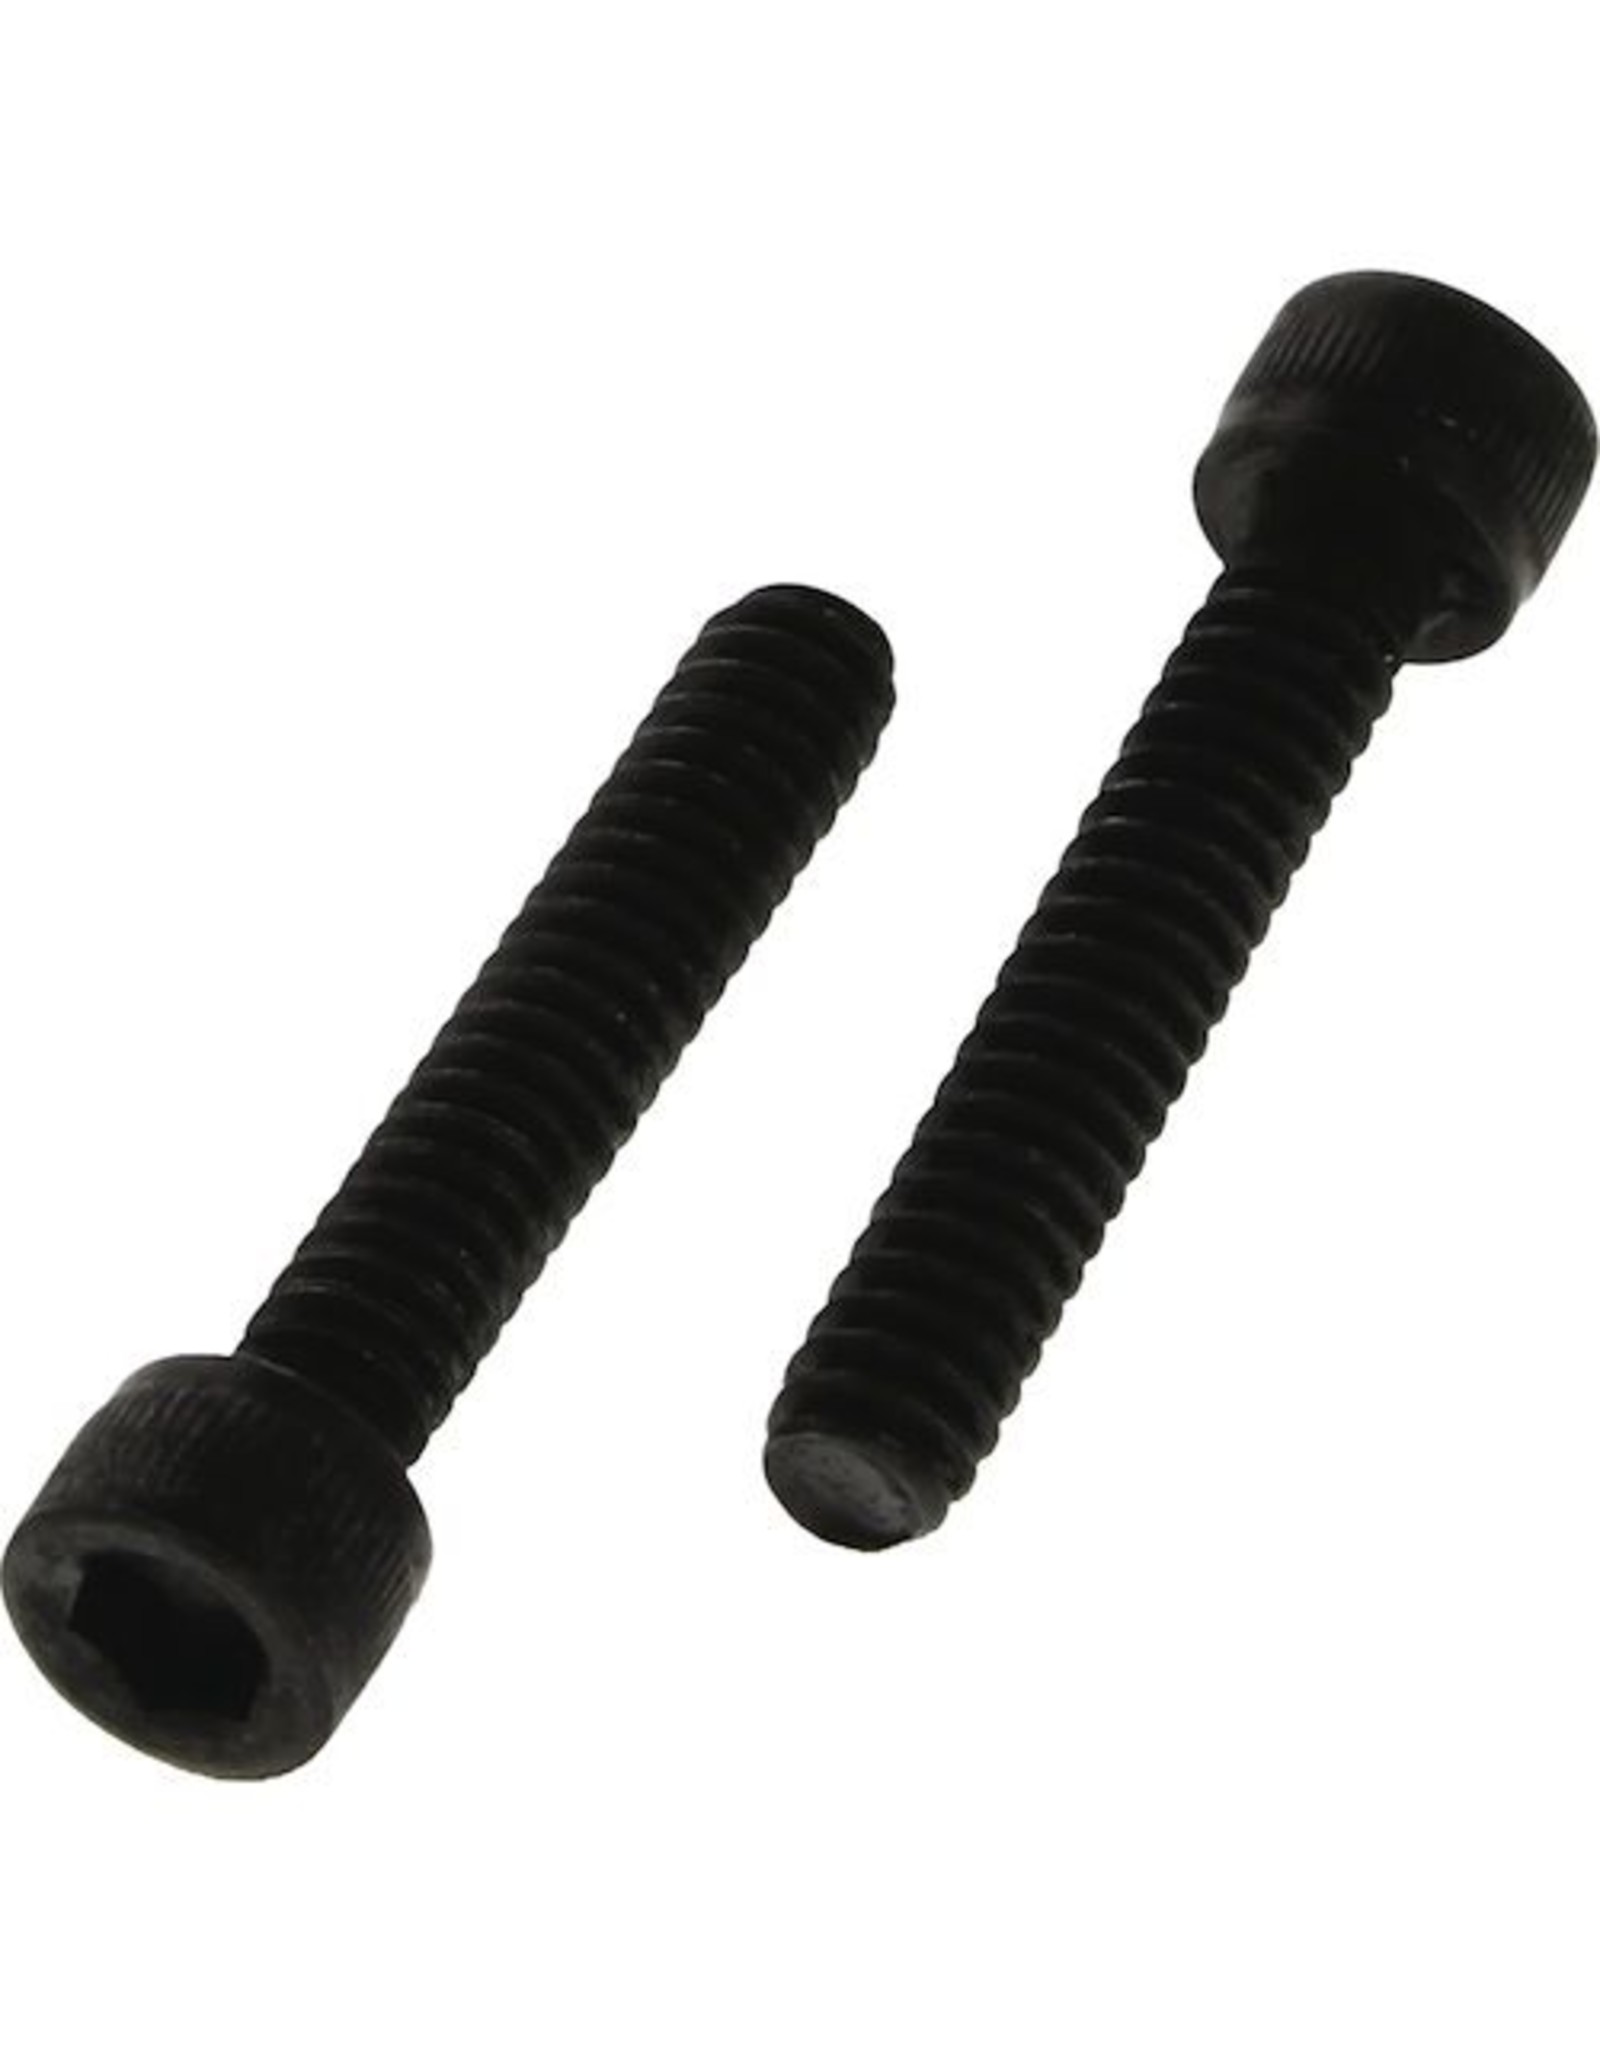 Steel Socket Cap Screws 6-32 x 3/4" (Pack of 3)